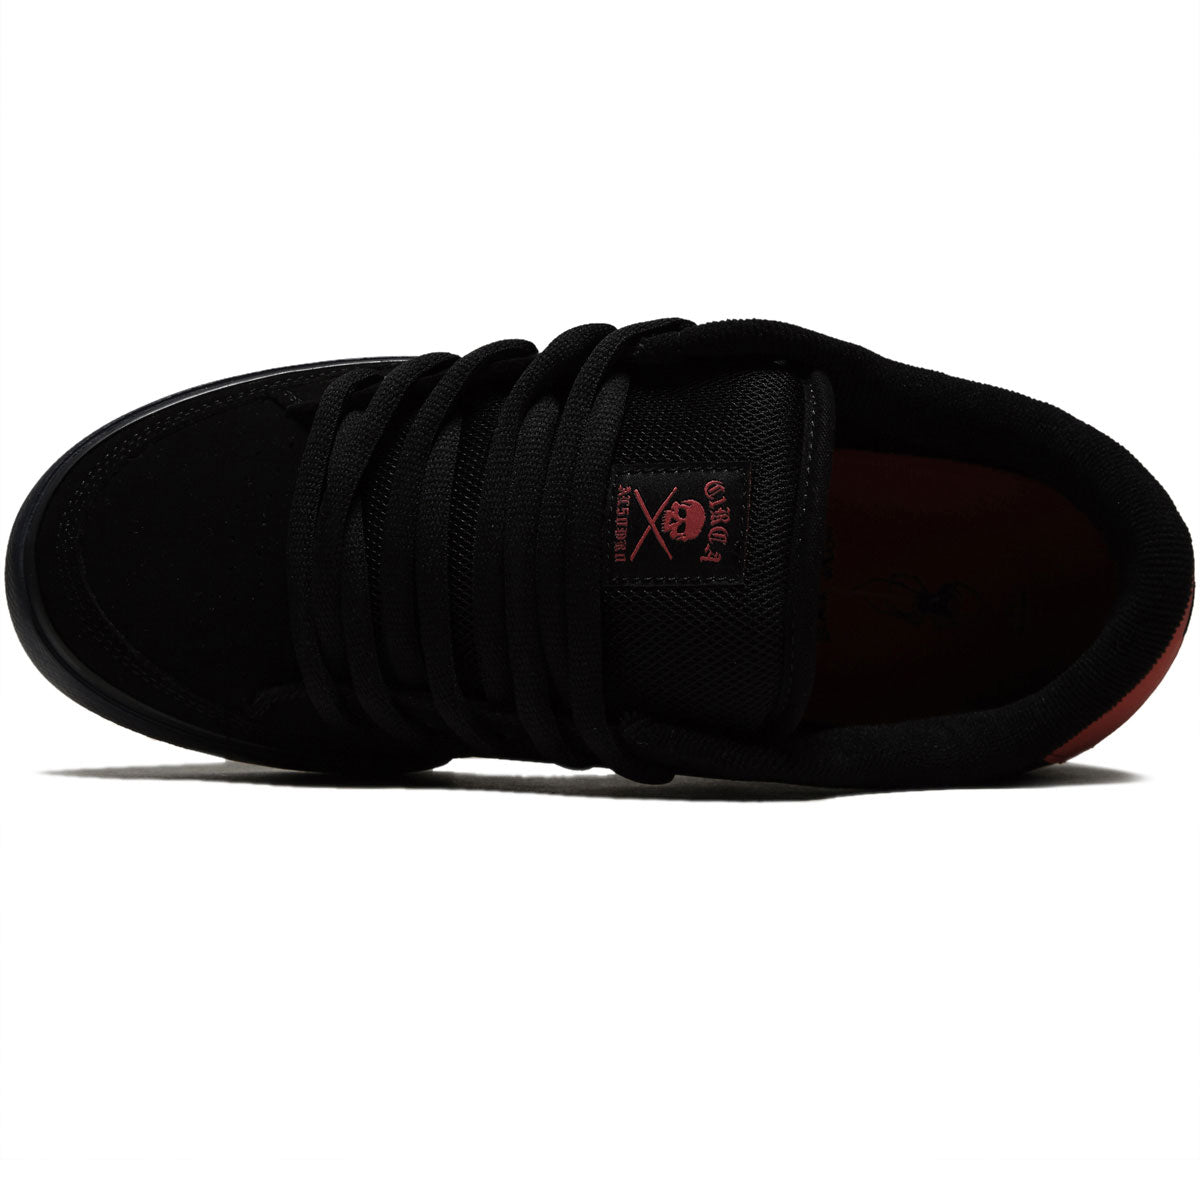 C1rca AL 50 Pro Shoes - Black/Scarlet image 3